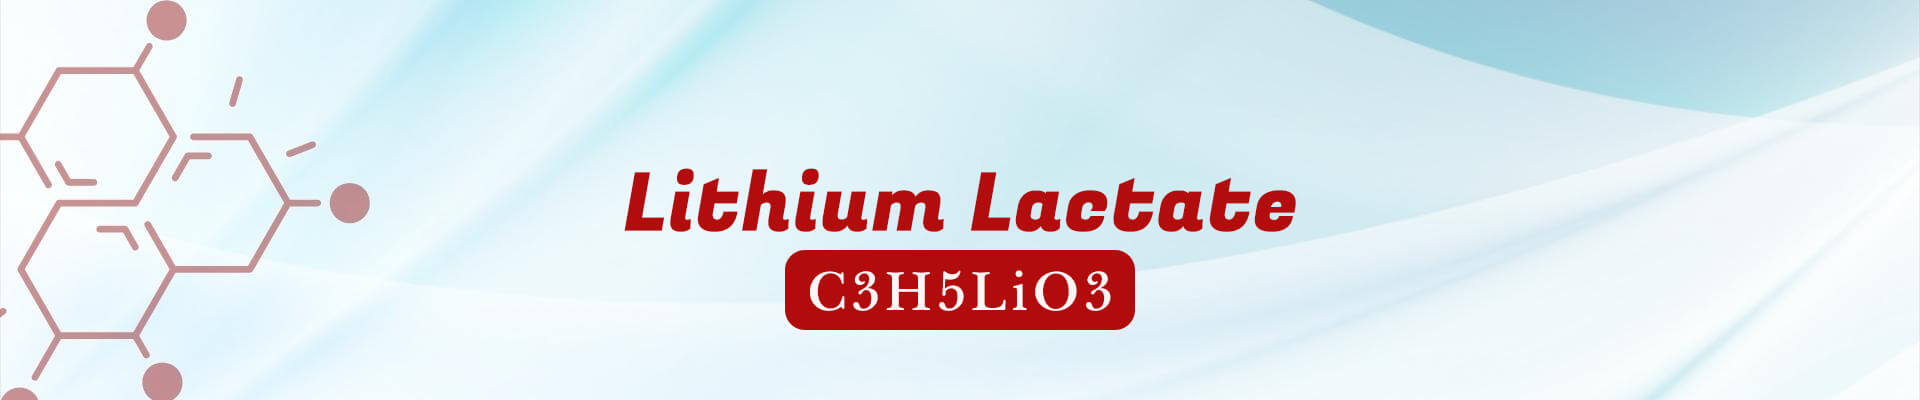 Lithium Lactate